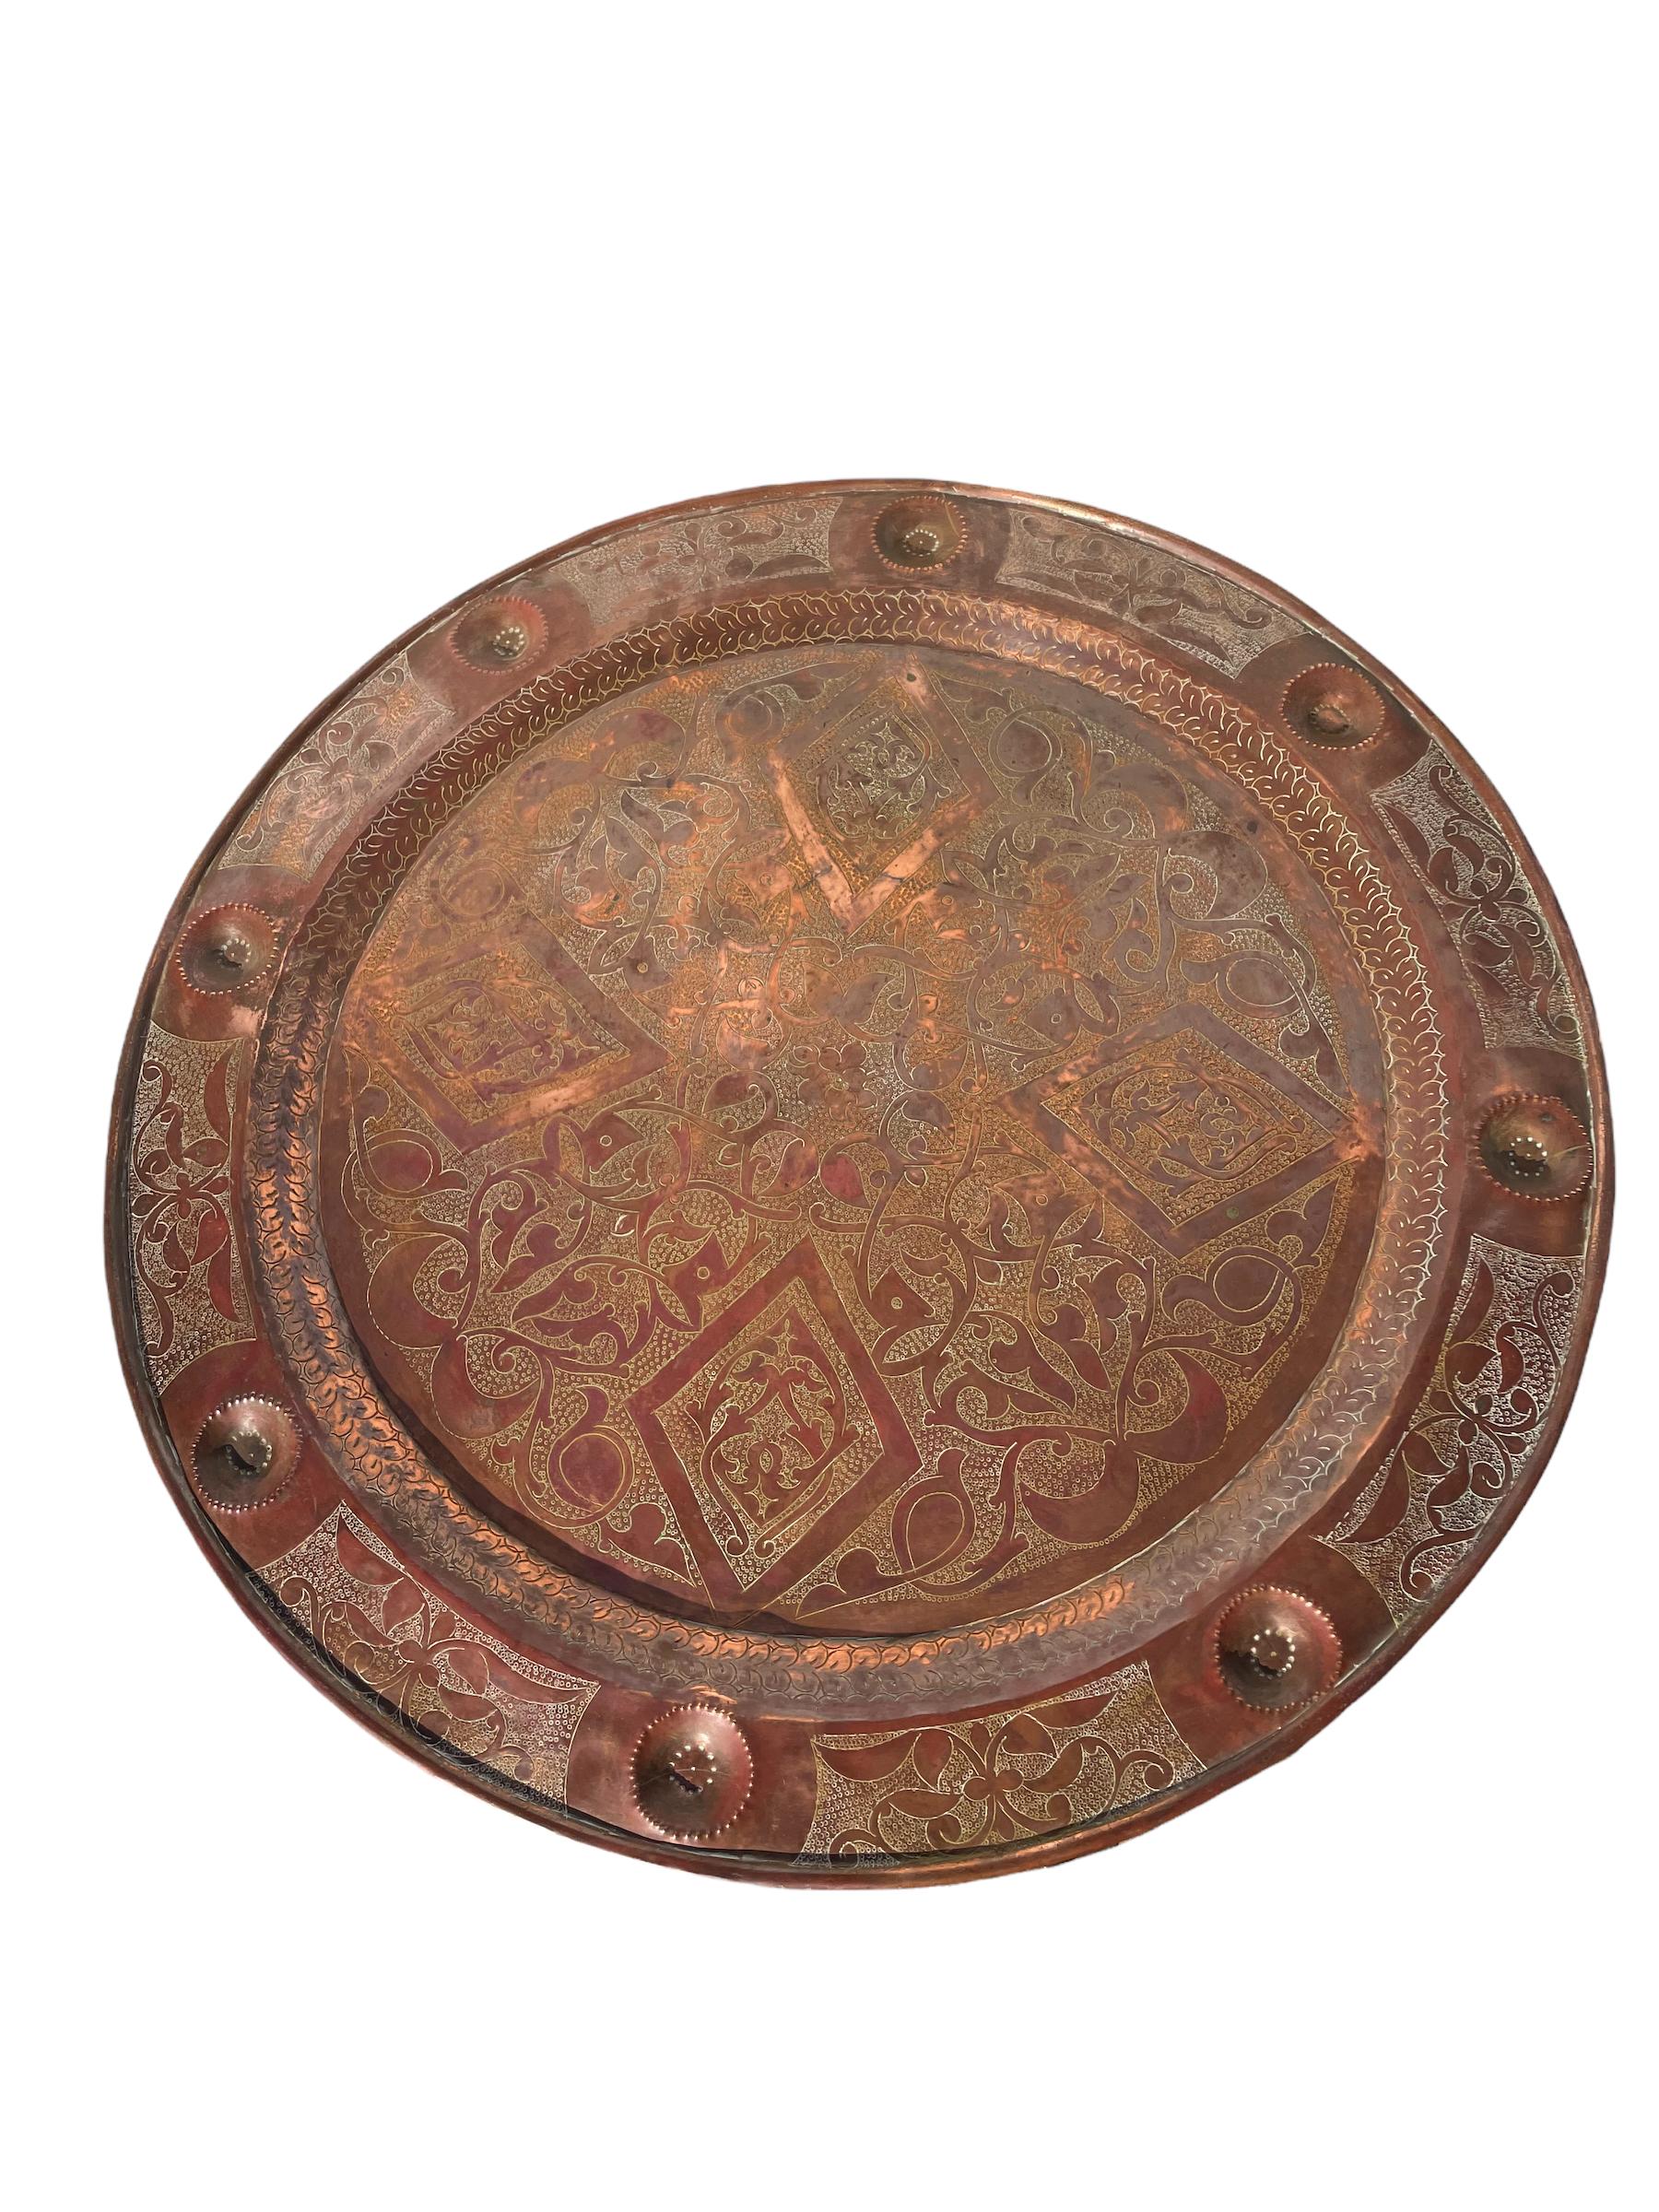 Early 20th Century Moorish Syrian Copper Tray Table